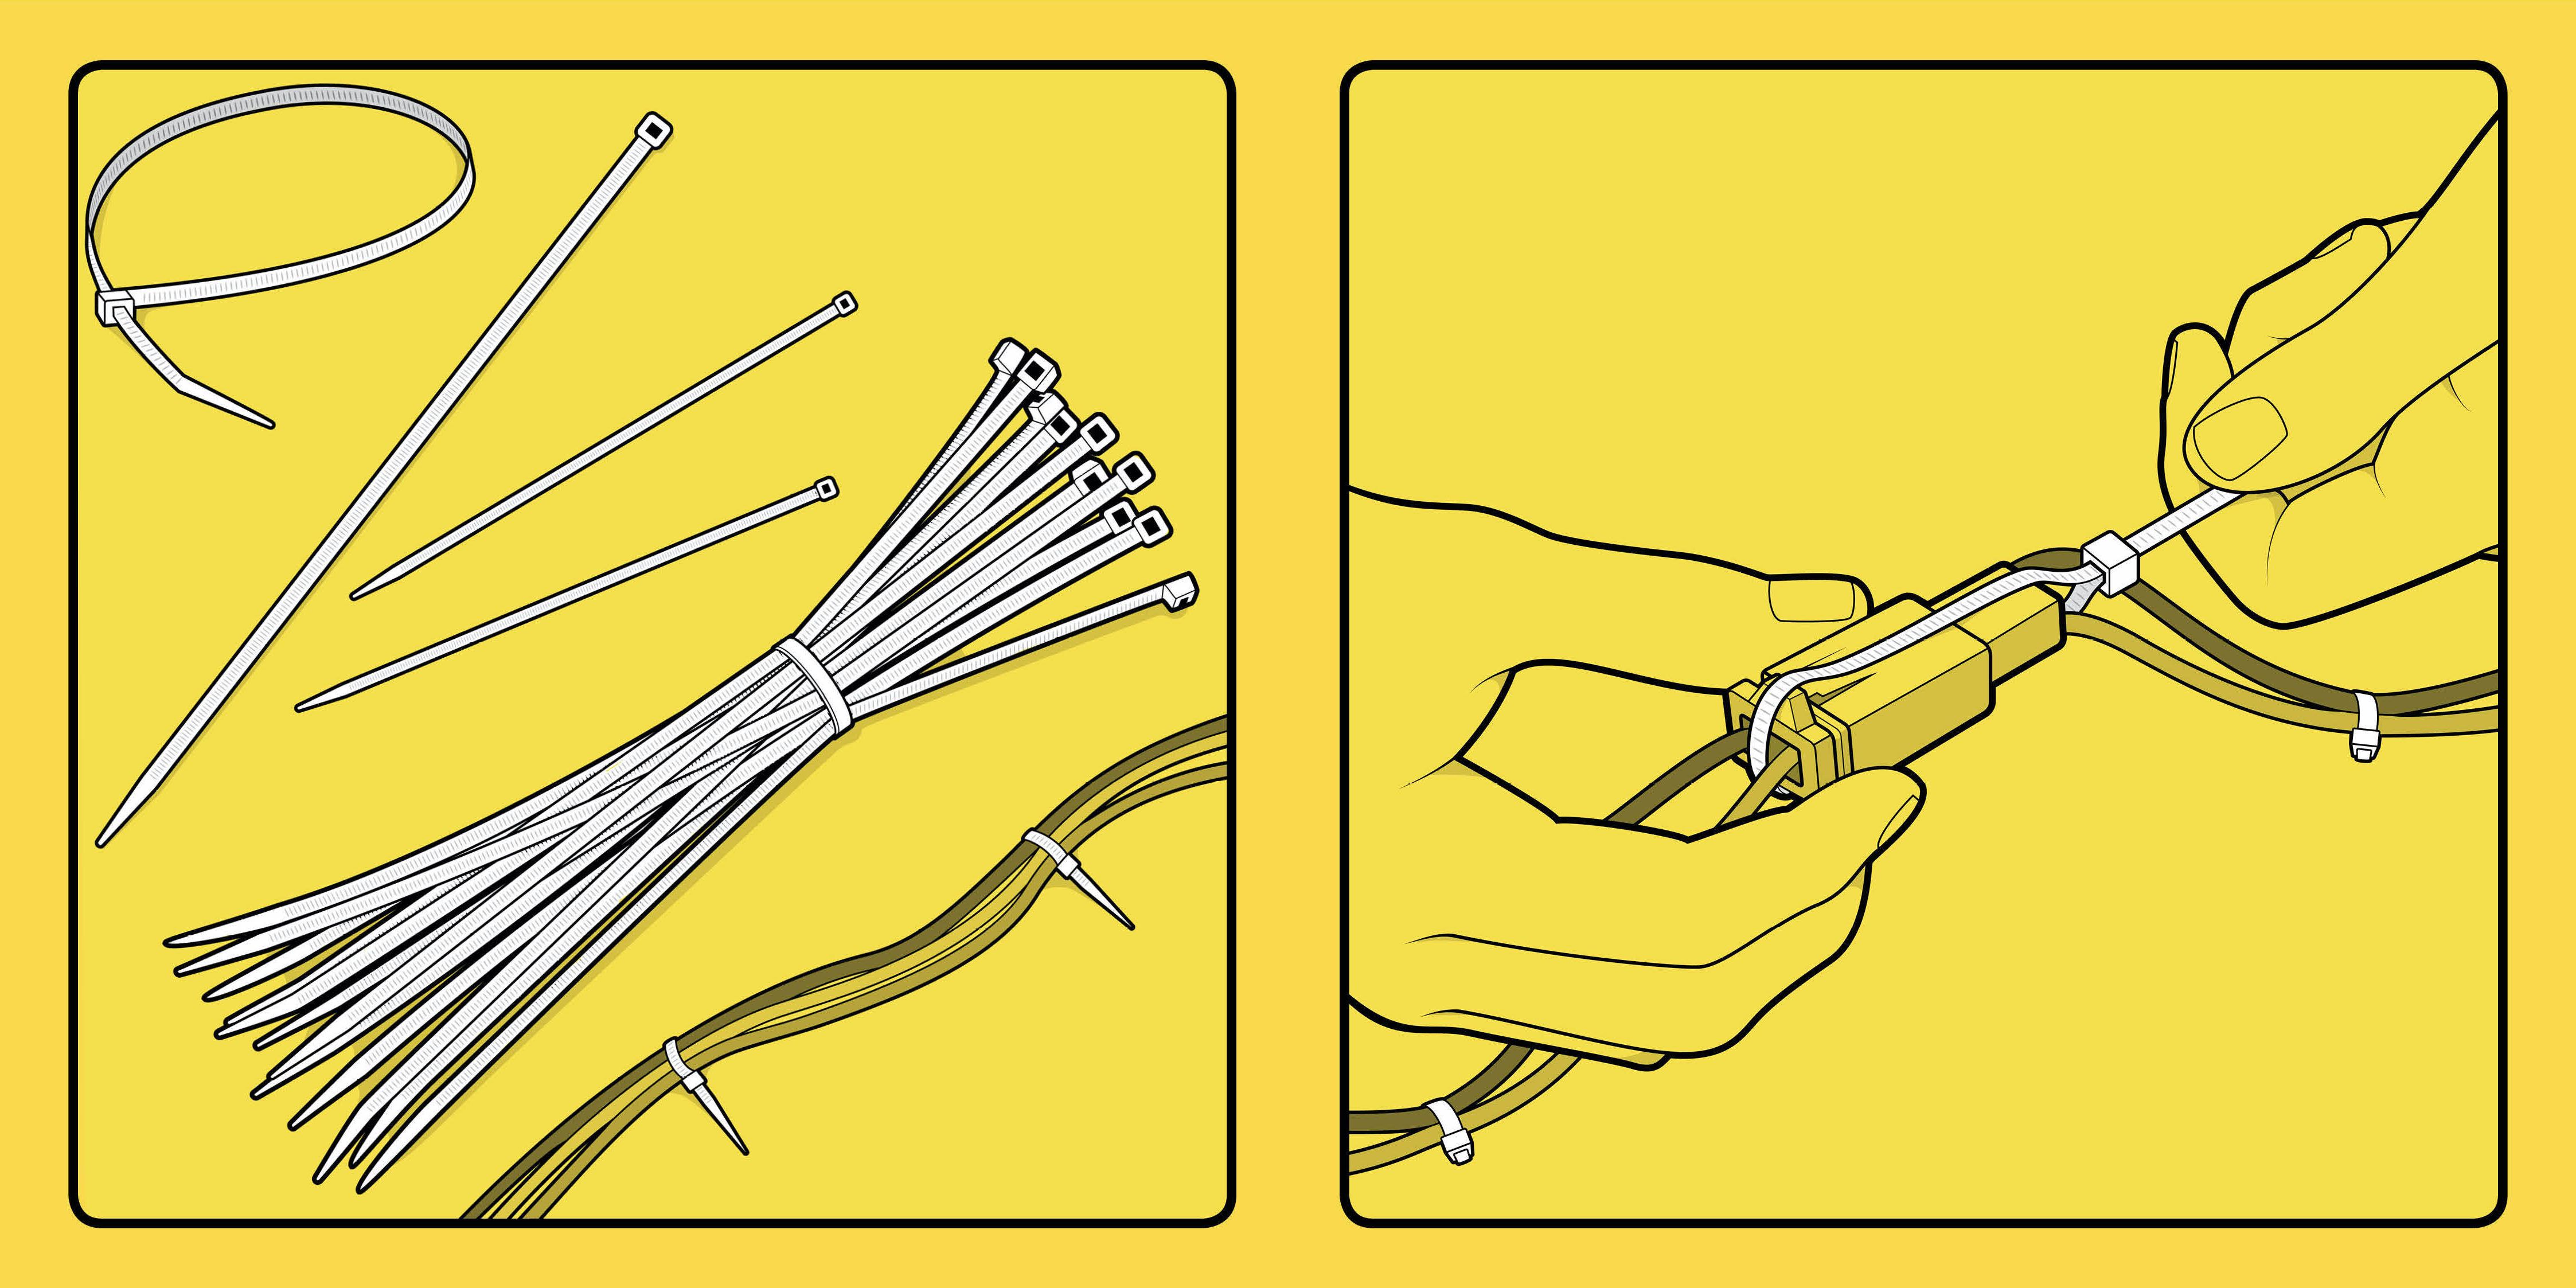 illustration of zip ties